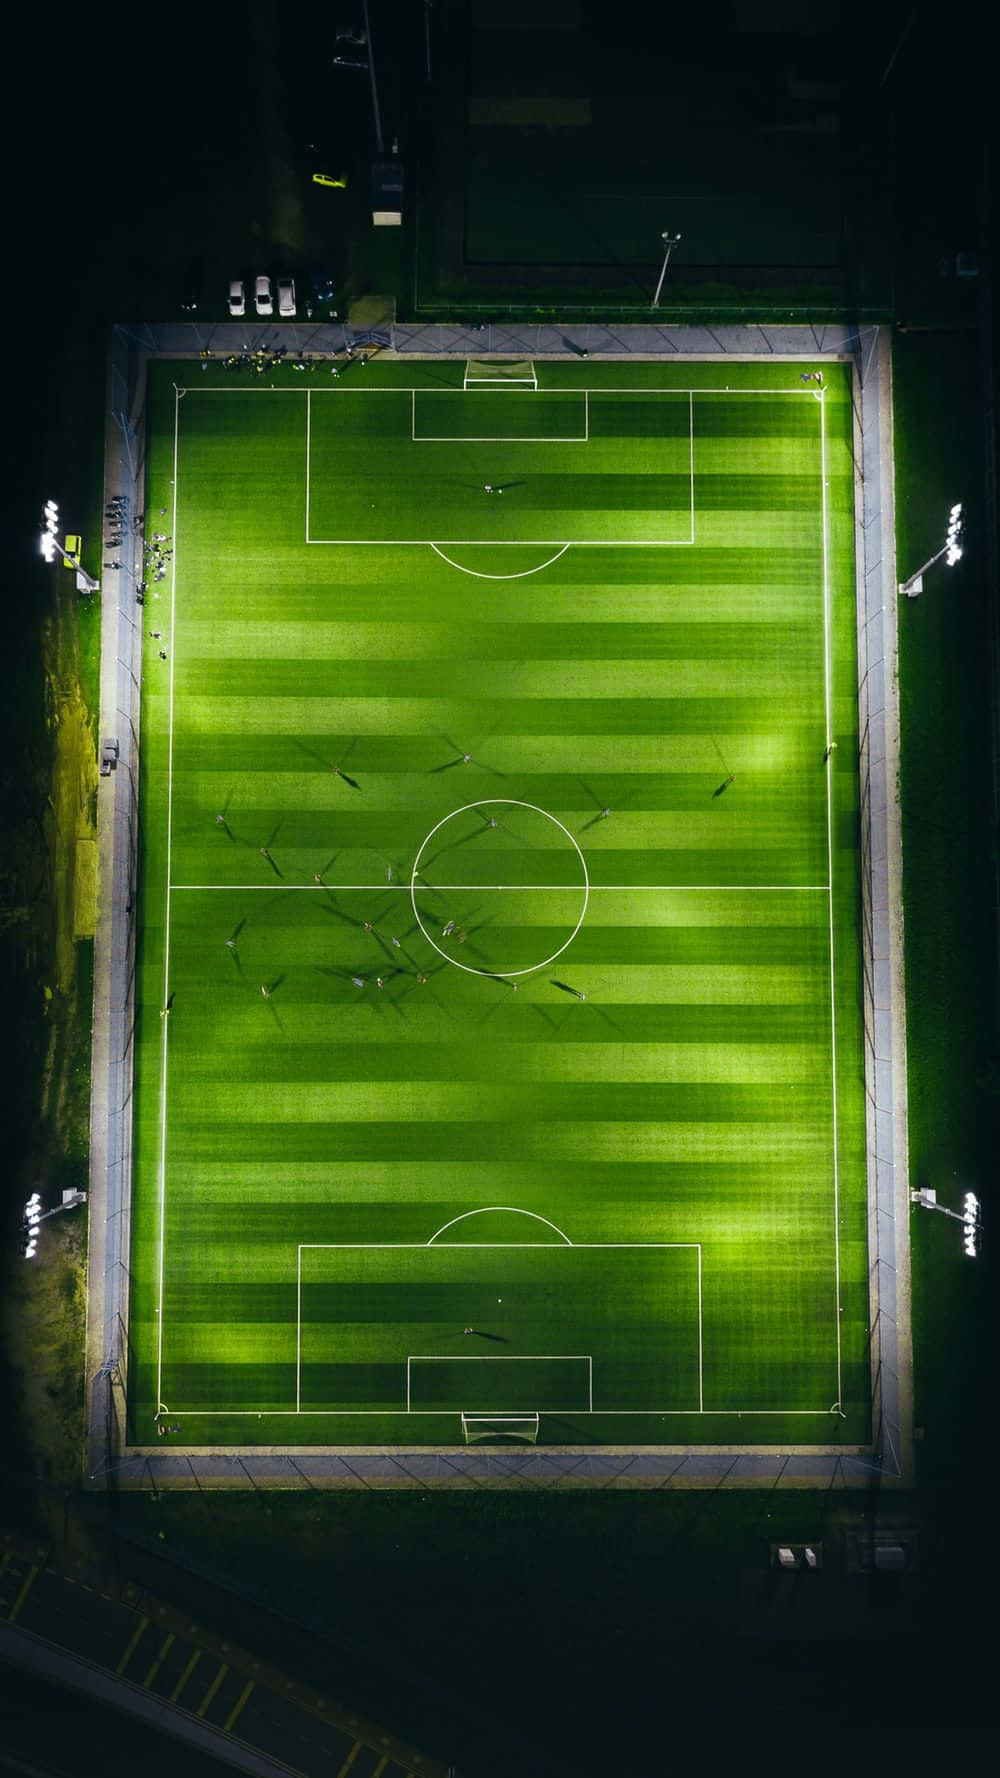 Mörkgrönbakgrund Med Fotbollsplan.